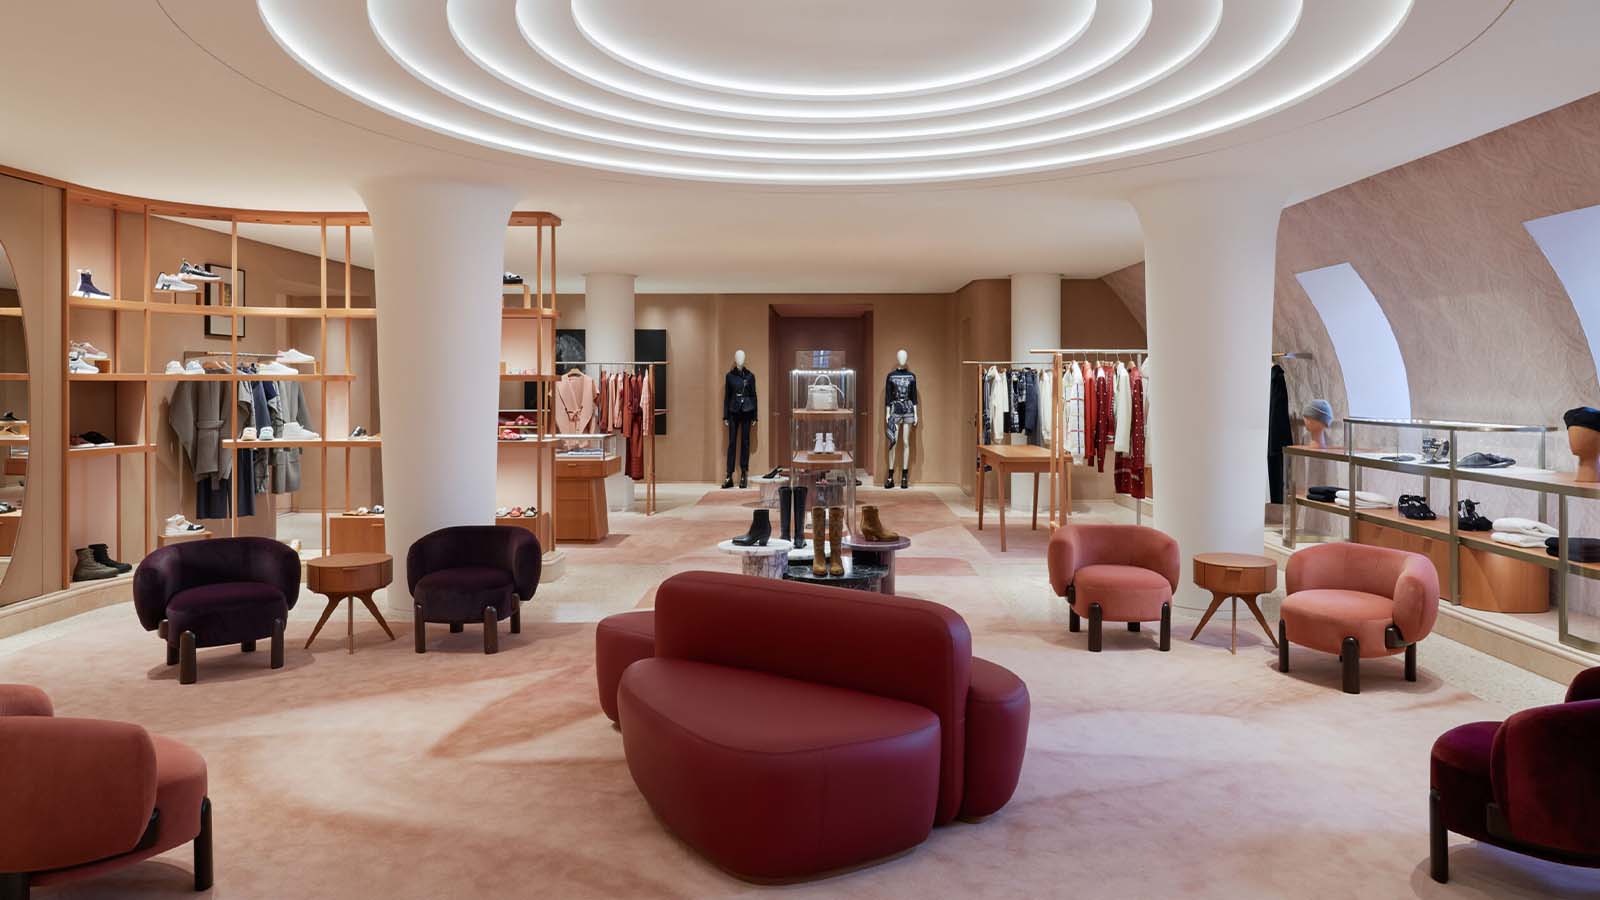 Louis Vuitton x Fornasetti Silk Architectura Square Scarf